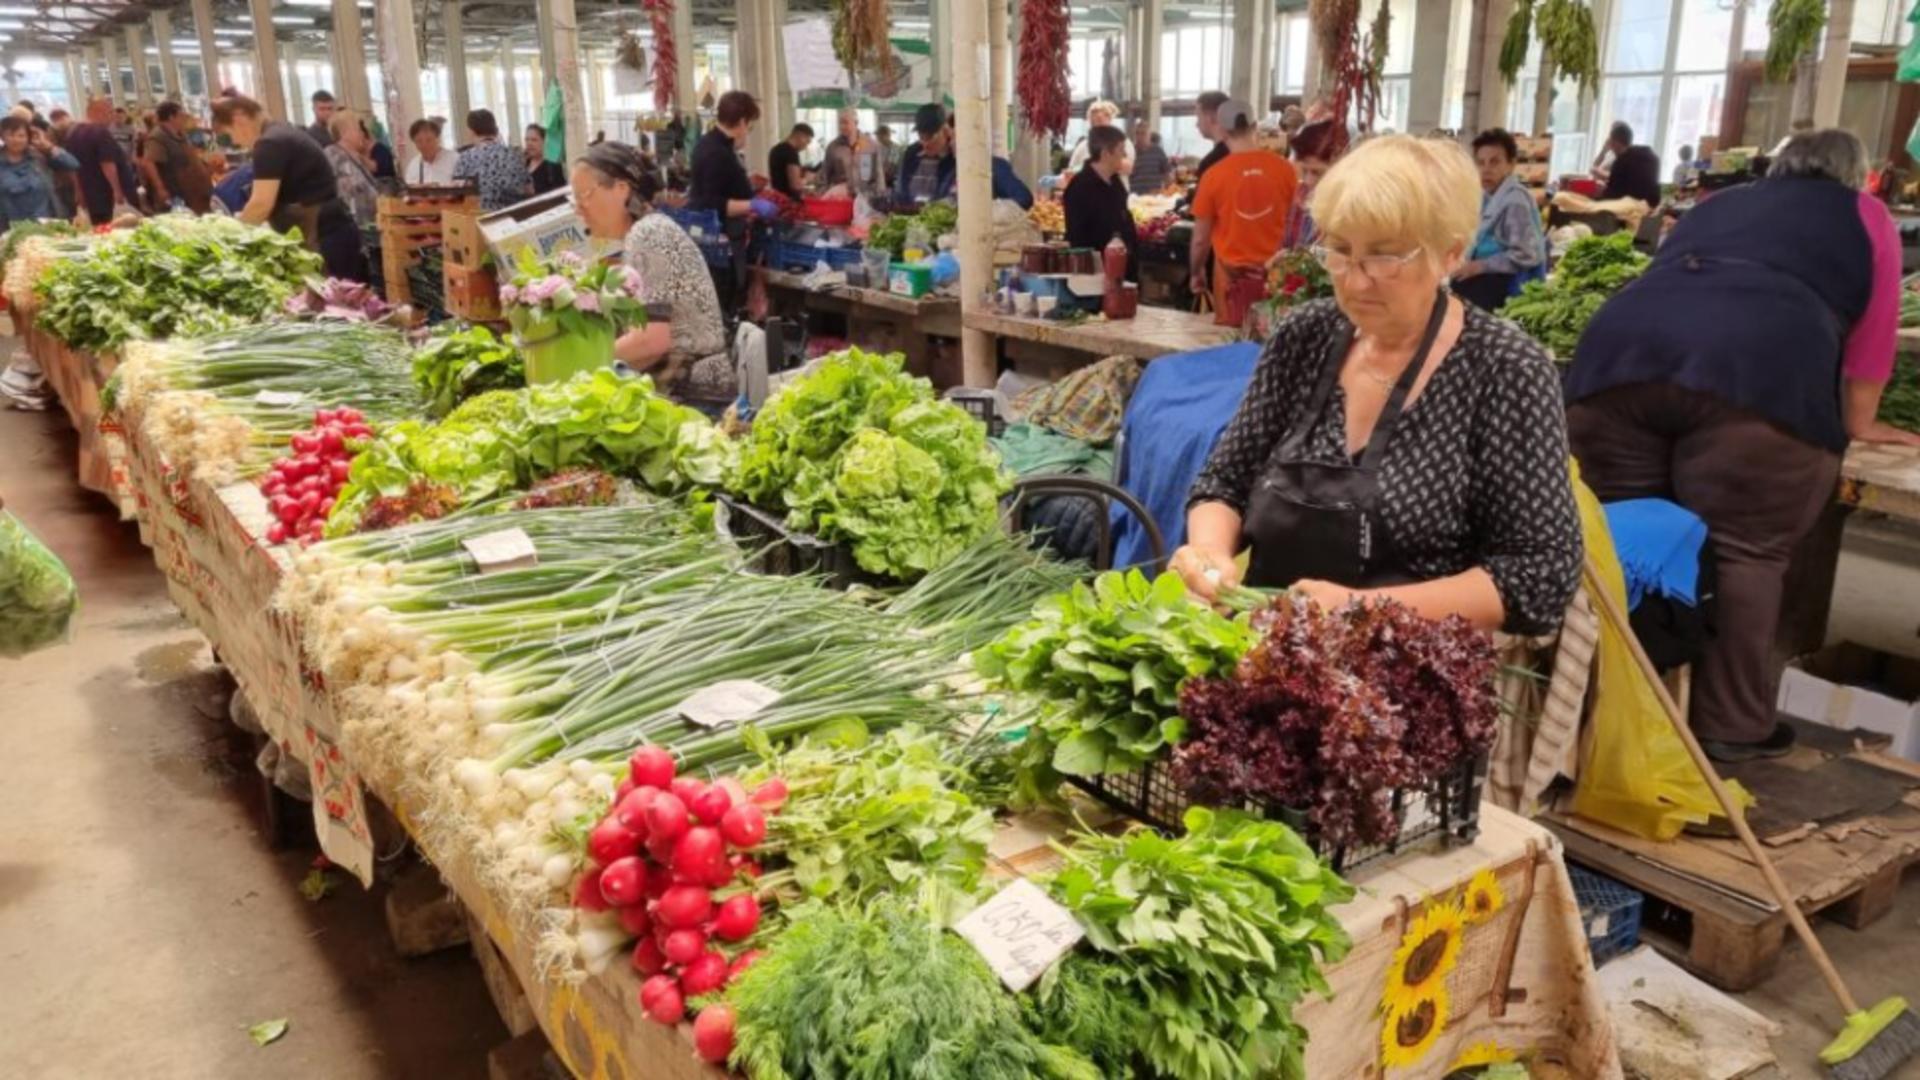 România importă masiv legume. Tarabele din piețe sunt pline cu ceapă, usturoi, roșii și cartofi de la străini